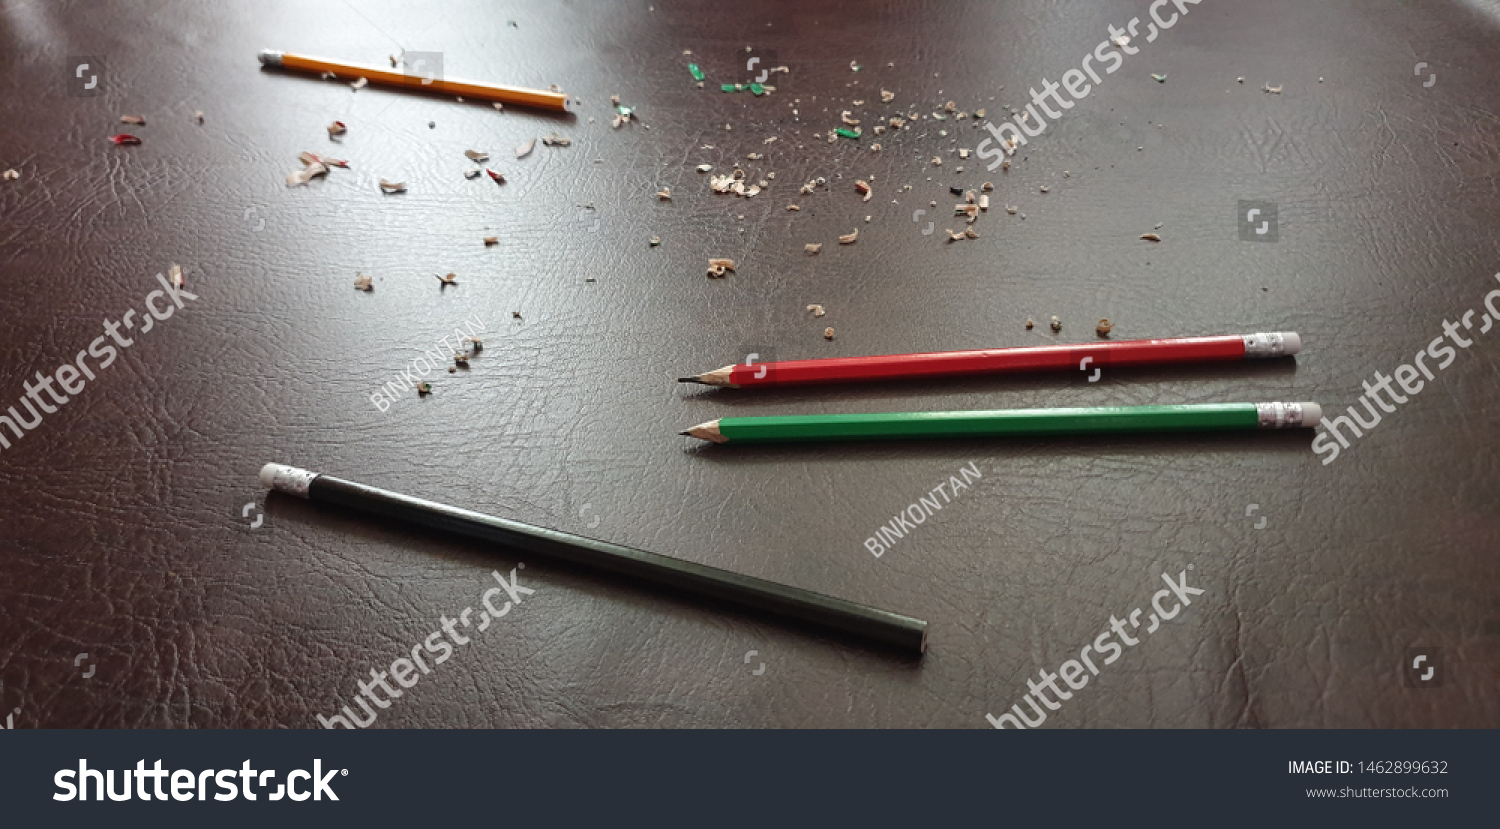 Knife sharpening pencils. Sharpen pencils. Sharpening pencils #1462899632